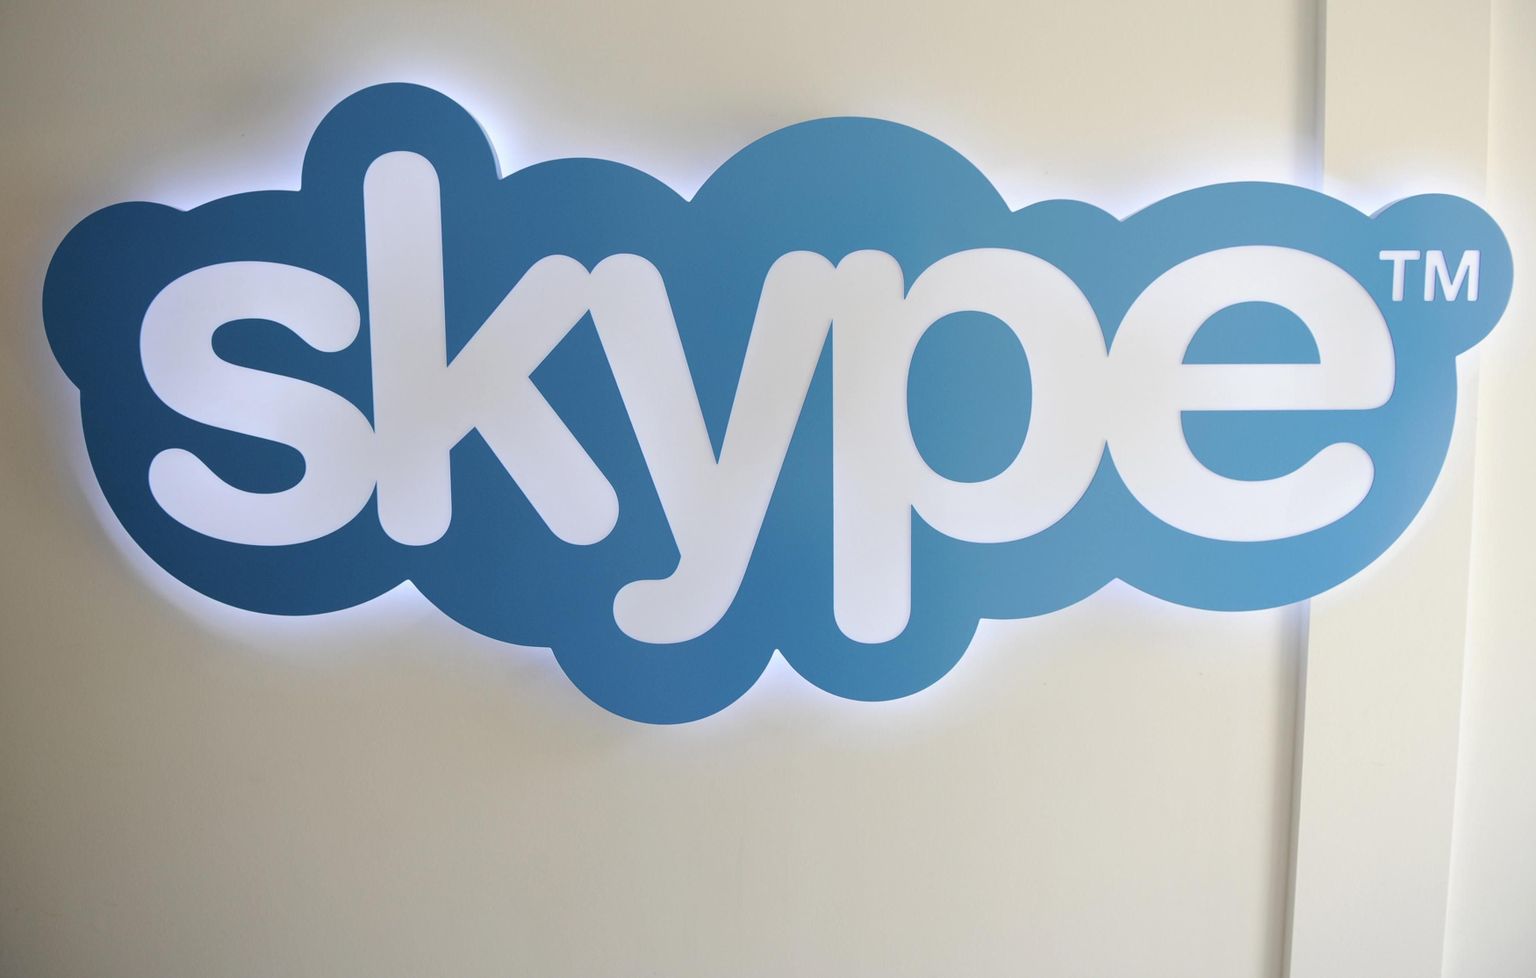 Briti haigla eelistaks paljude patsientidega suhtlemiseks kasutada Skype'i.